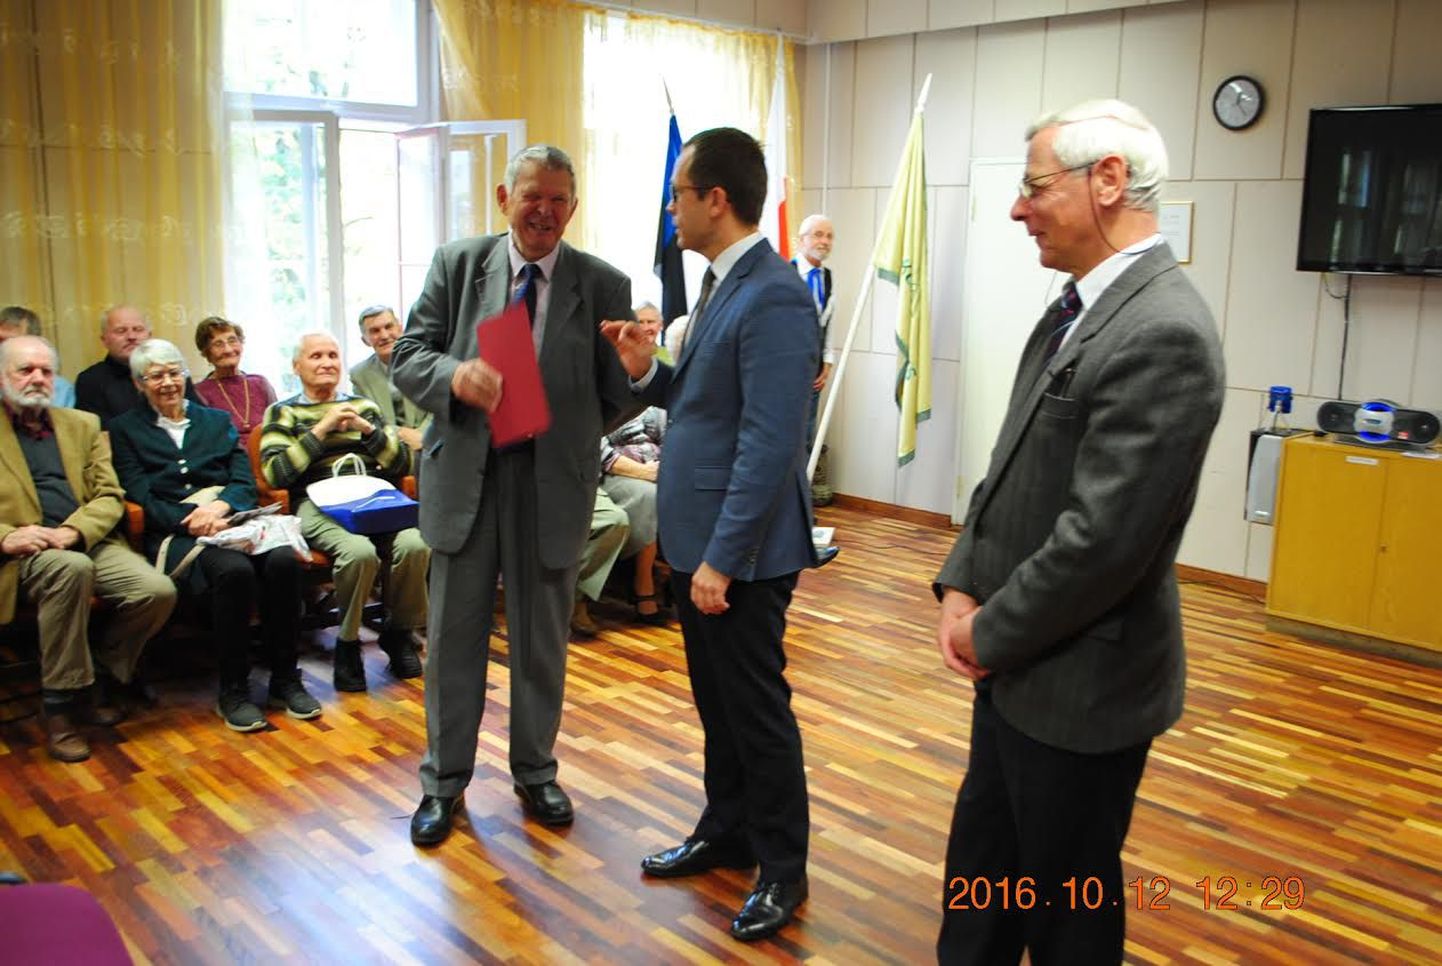 Tervituskõnedega soovisid edu Tartu linnapea Urmas Klaas ja volikogu esimees Vladimir Šokman.